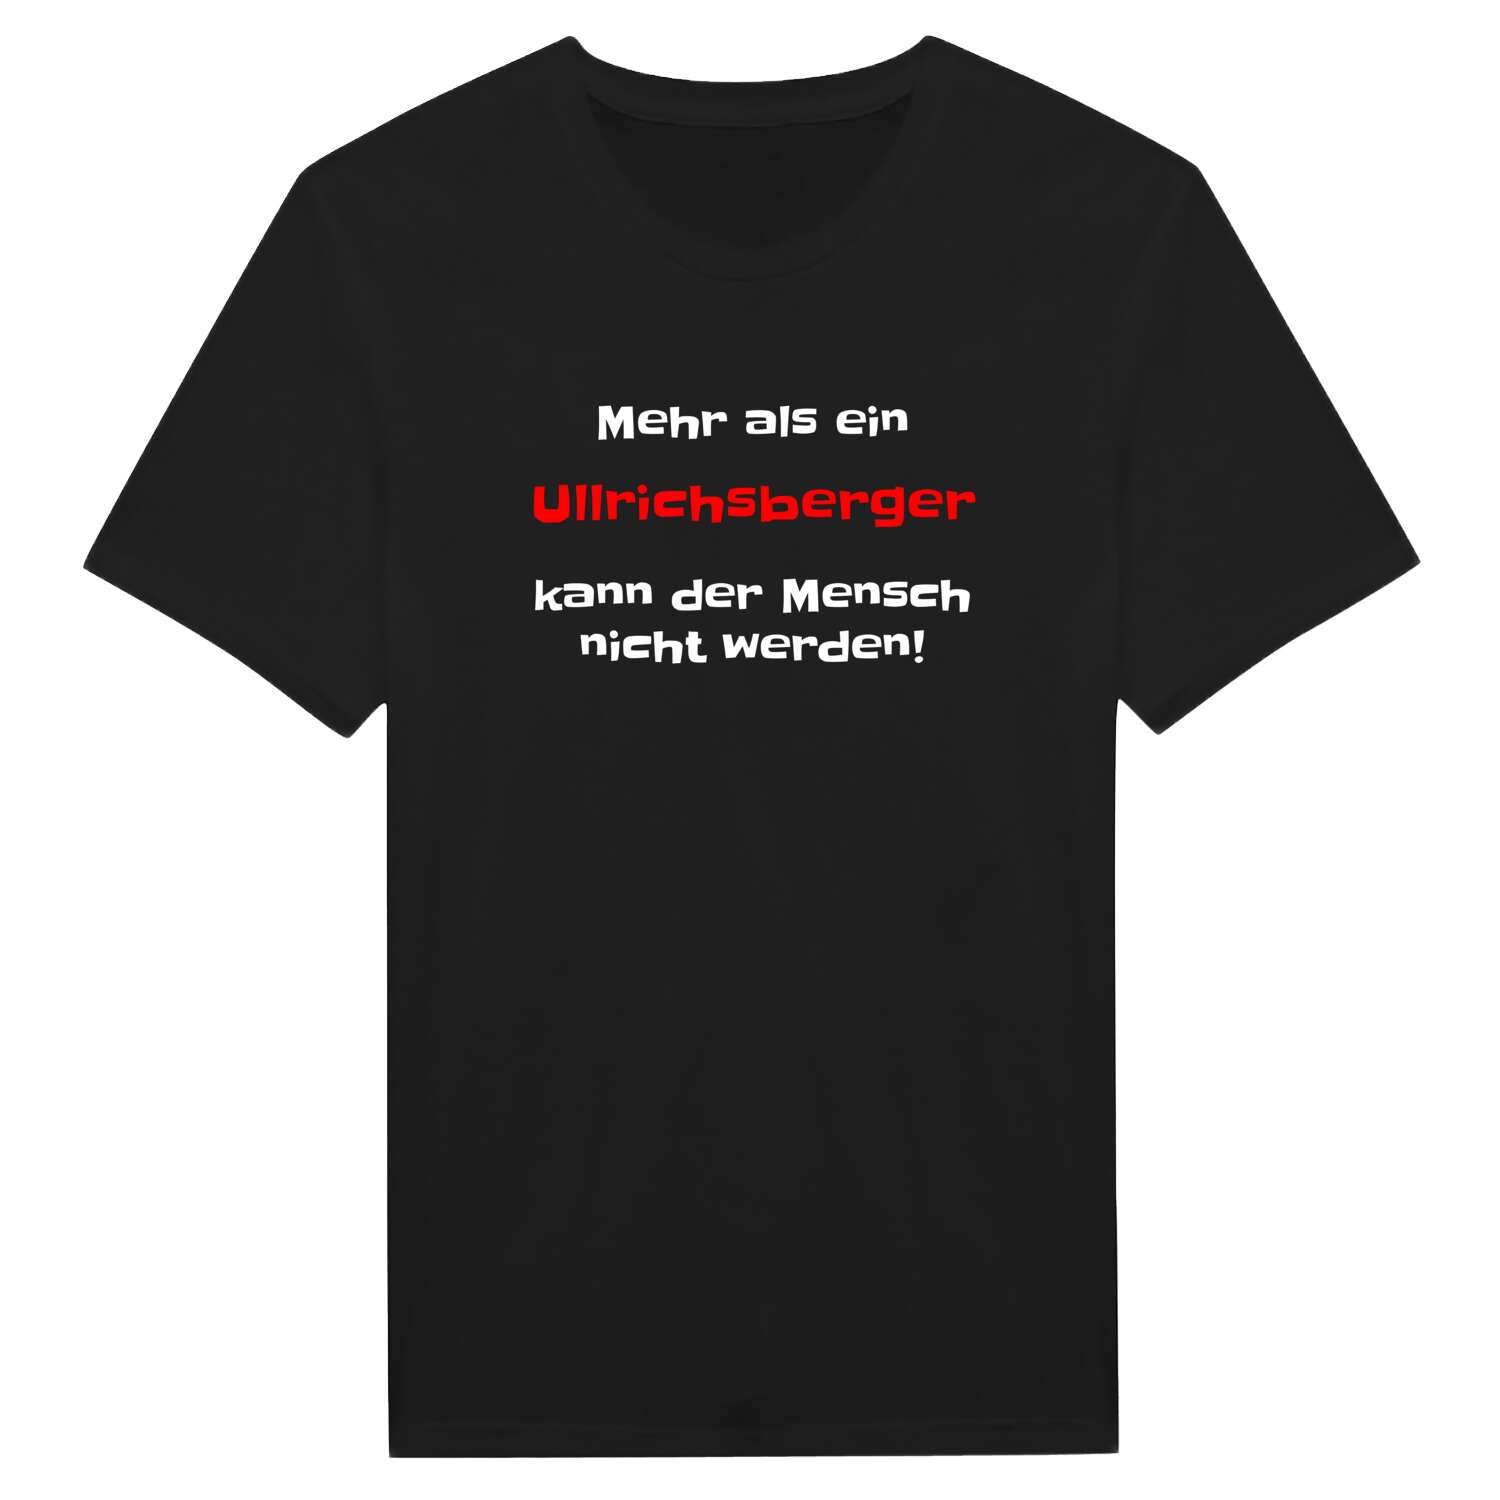 Ullrichsberg T-Shirt »Mehr als ein«